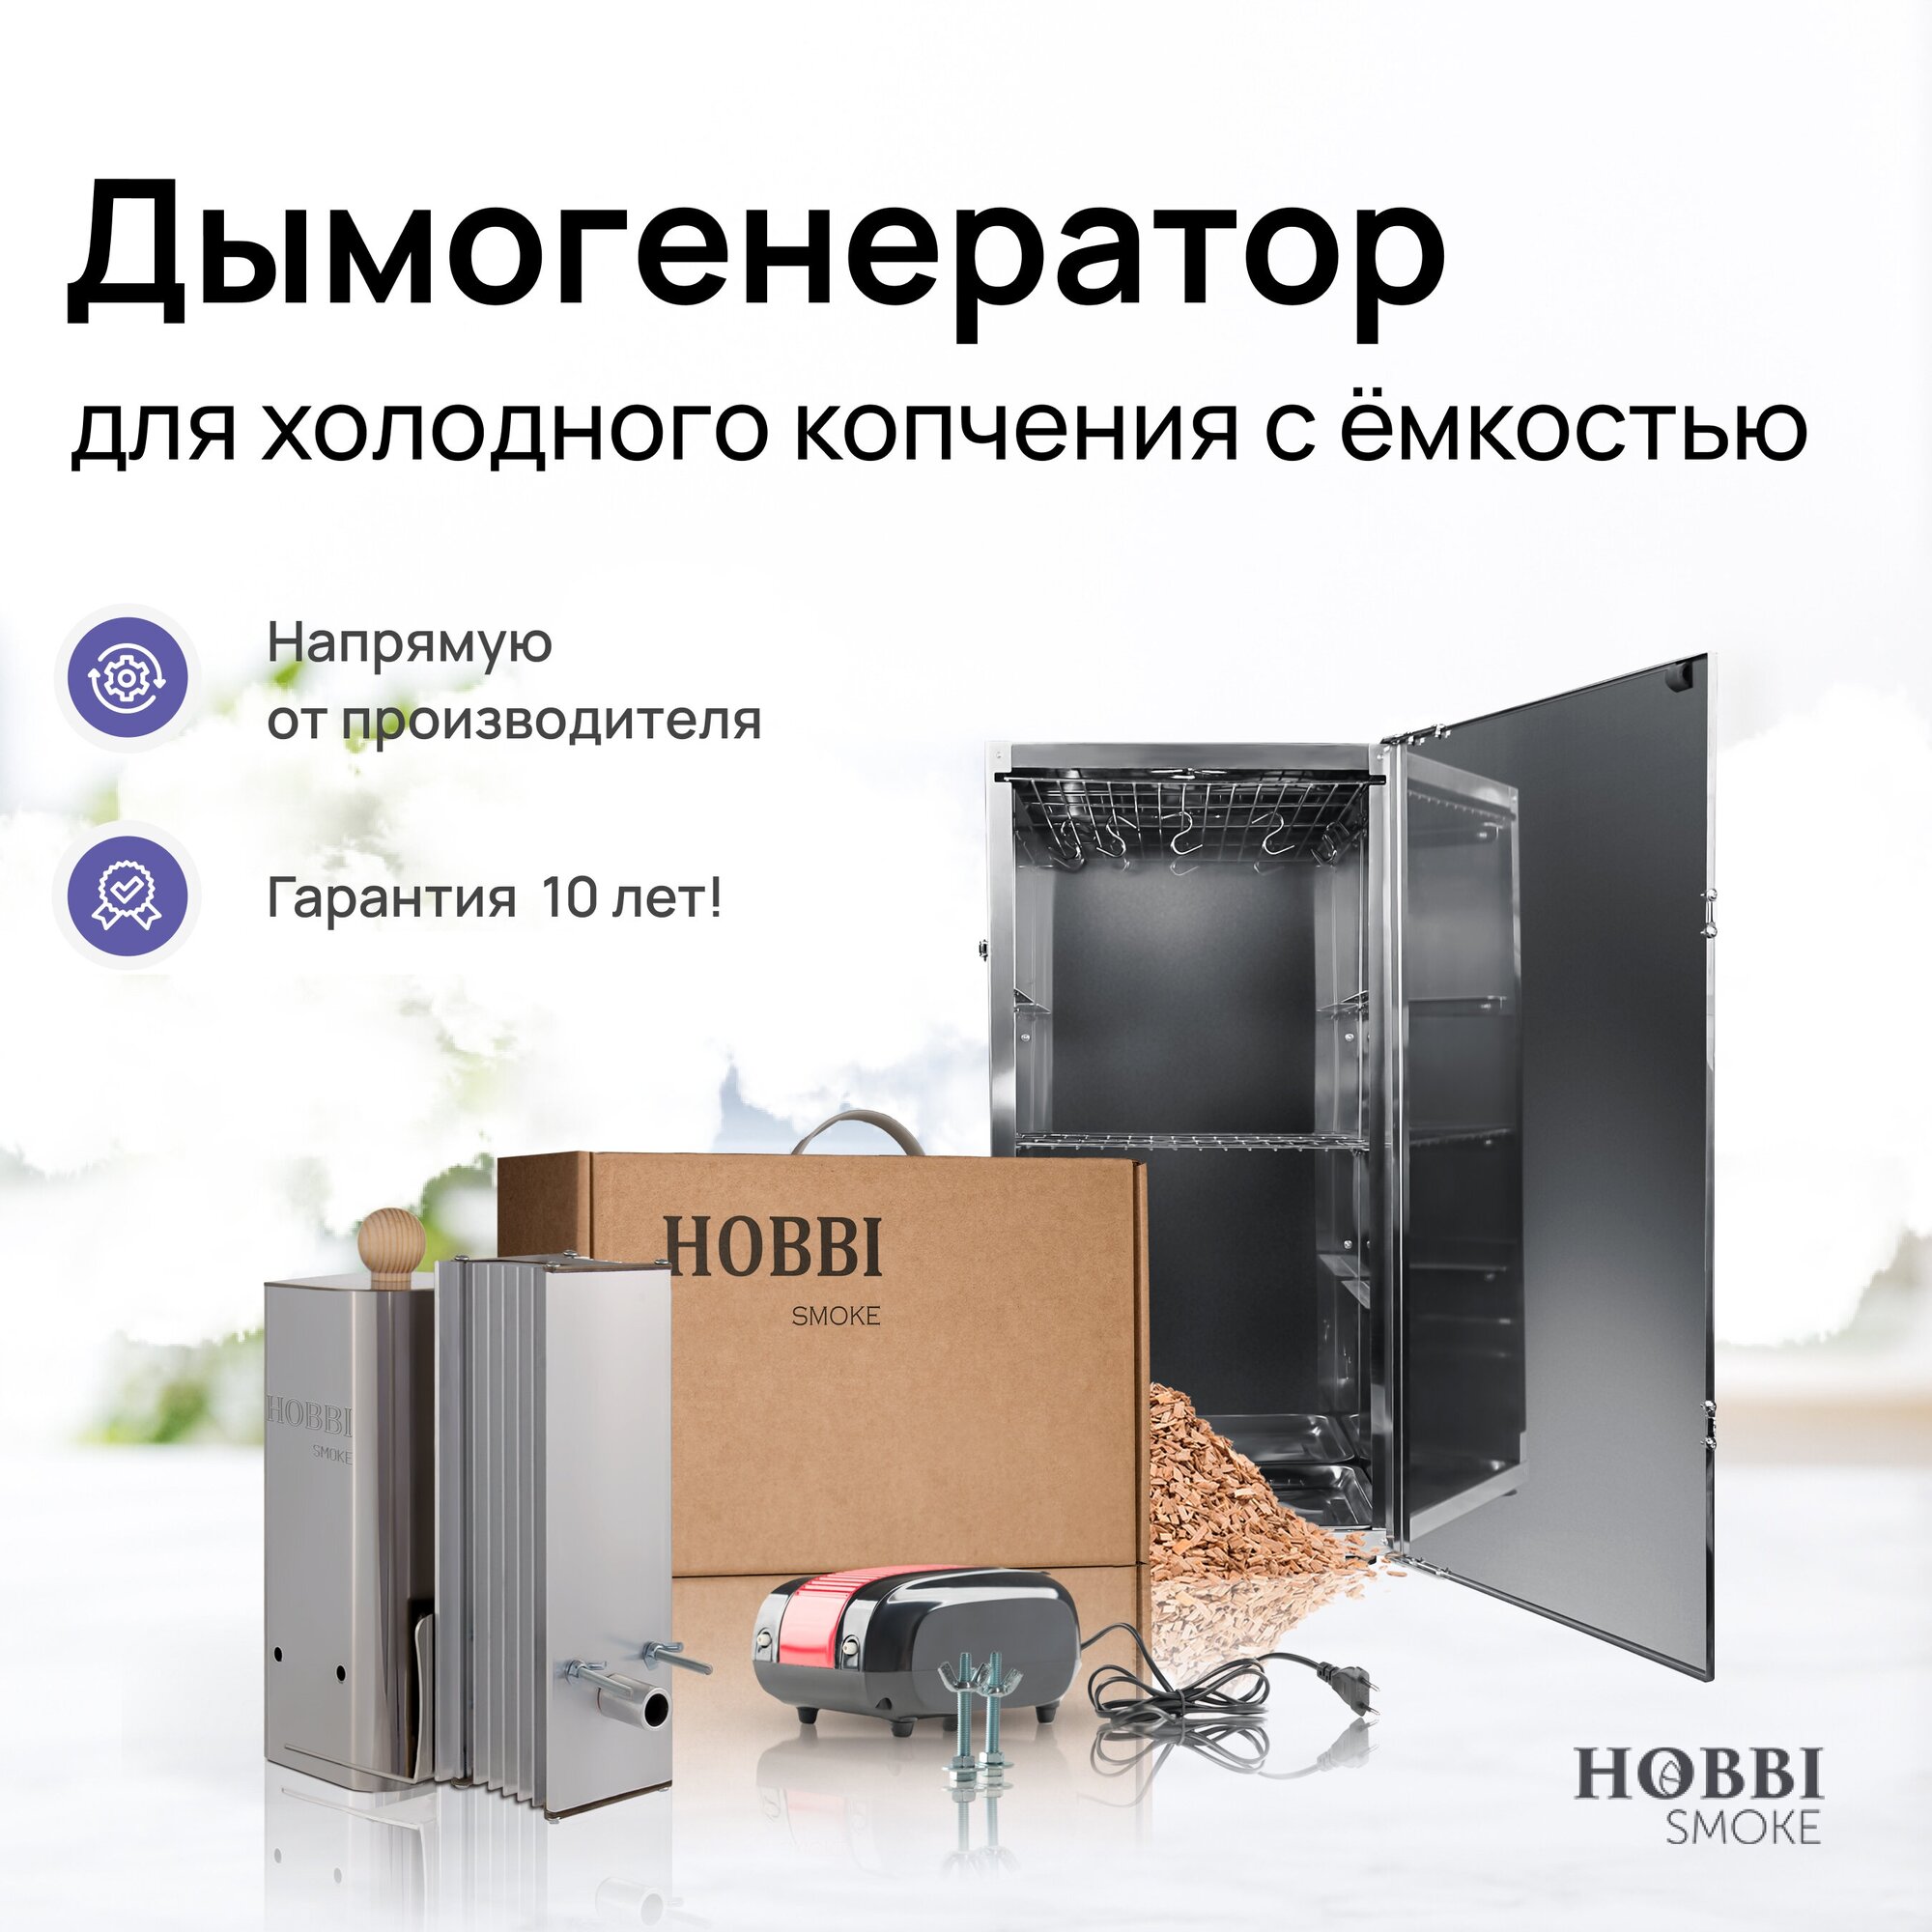 Дымогенератор Hobbi Smoke 2.0 коптильня для холодного копчения cо стальной емкостью